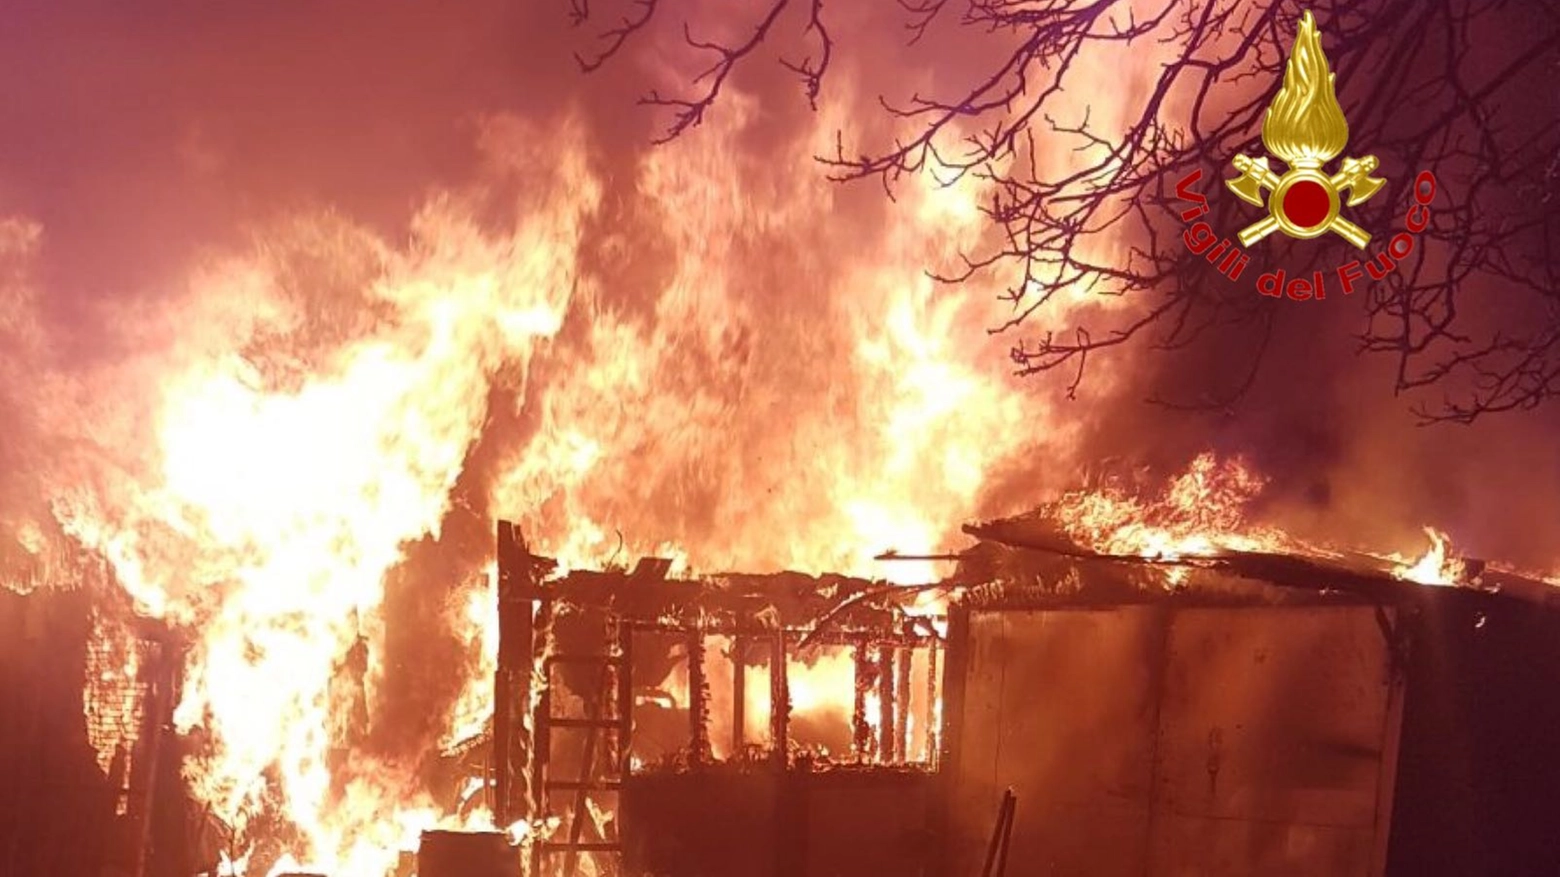 Incendio in una baracca a Lainate